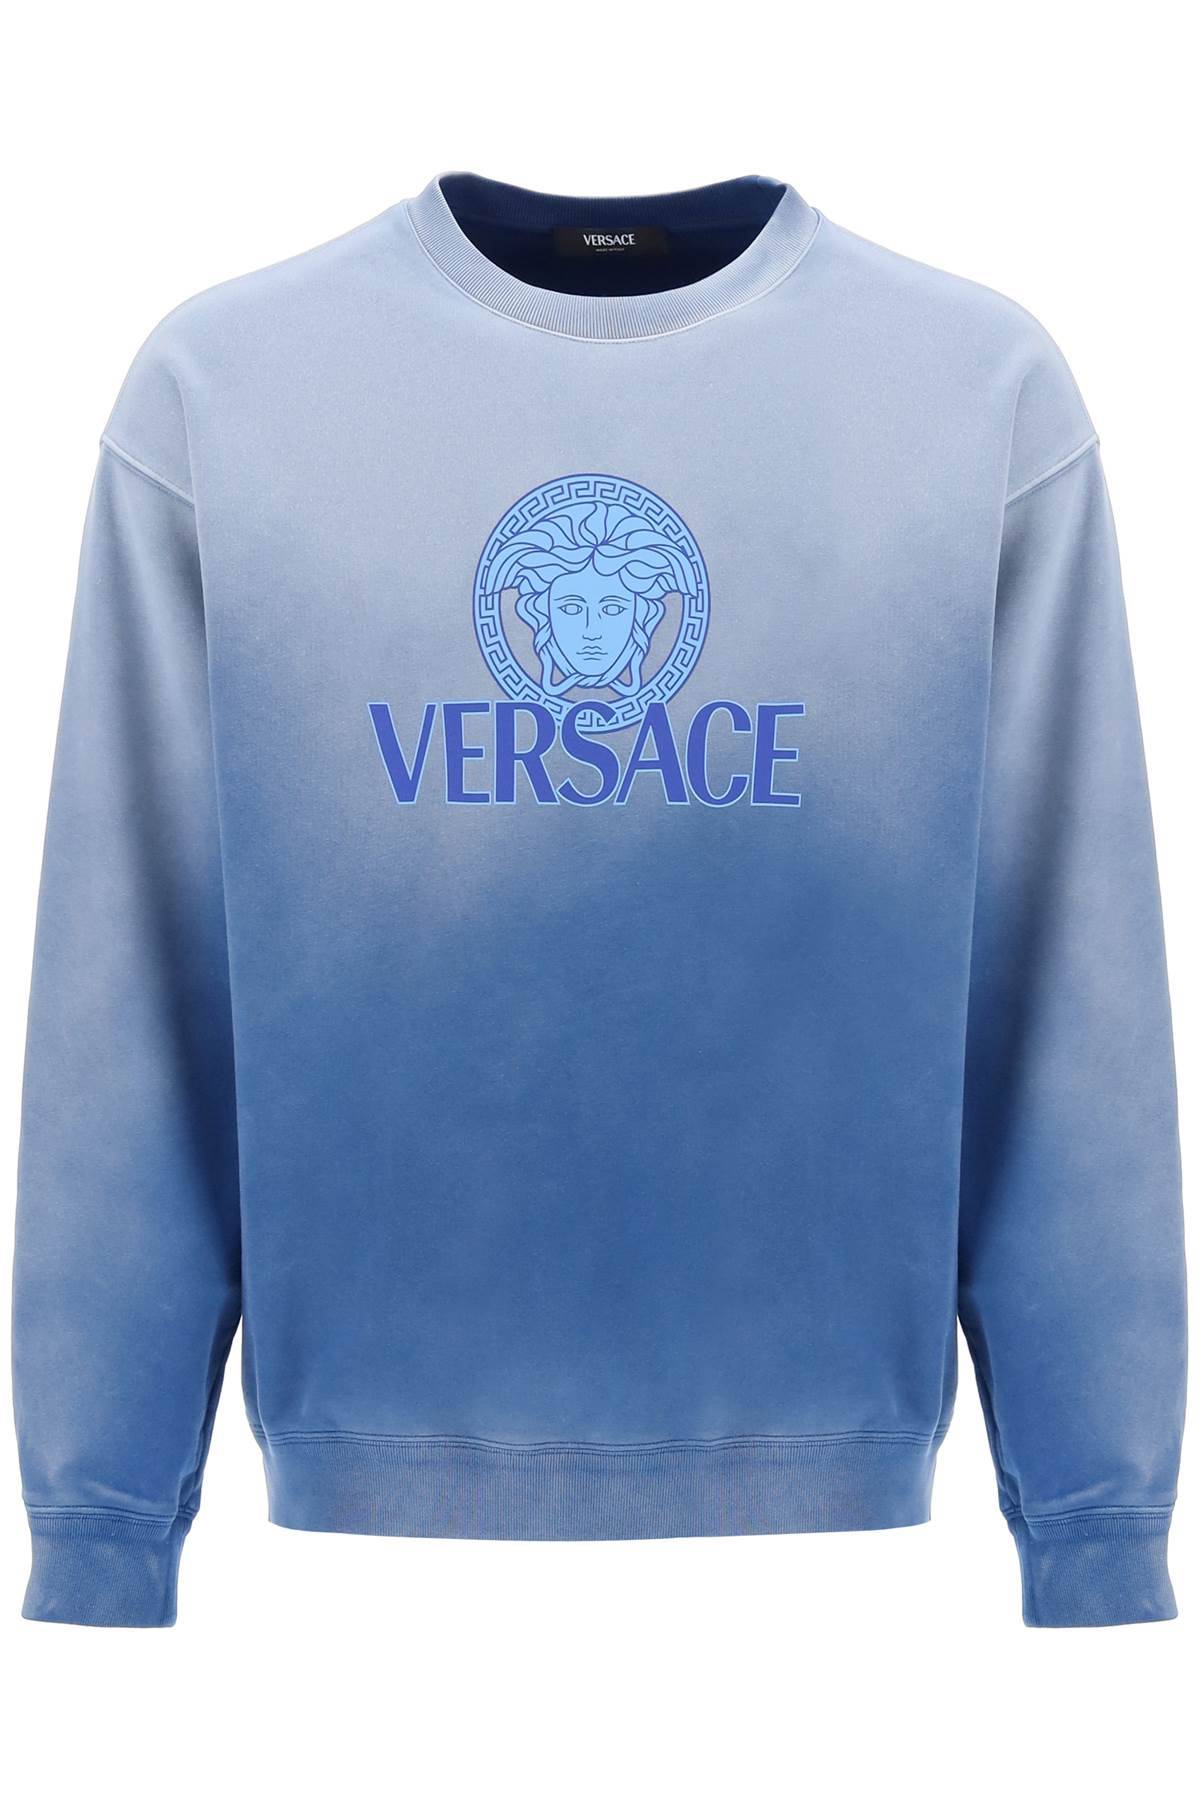 Versace VERSACE